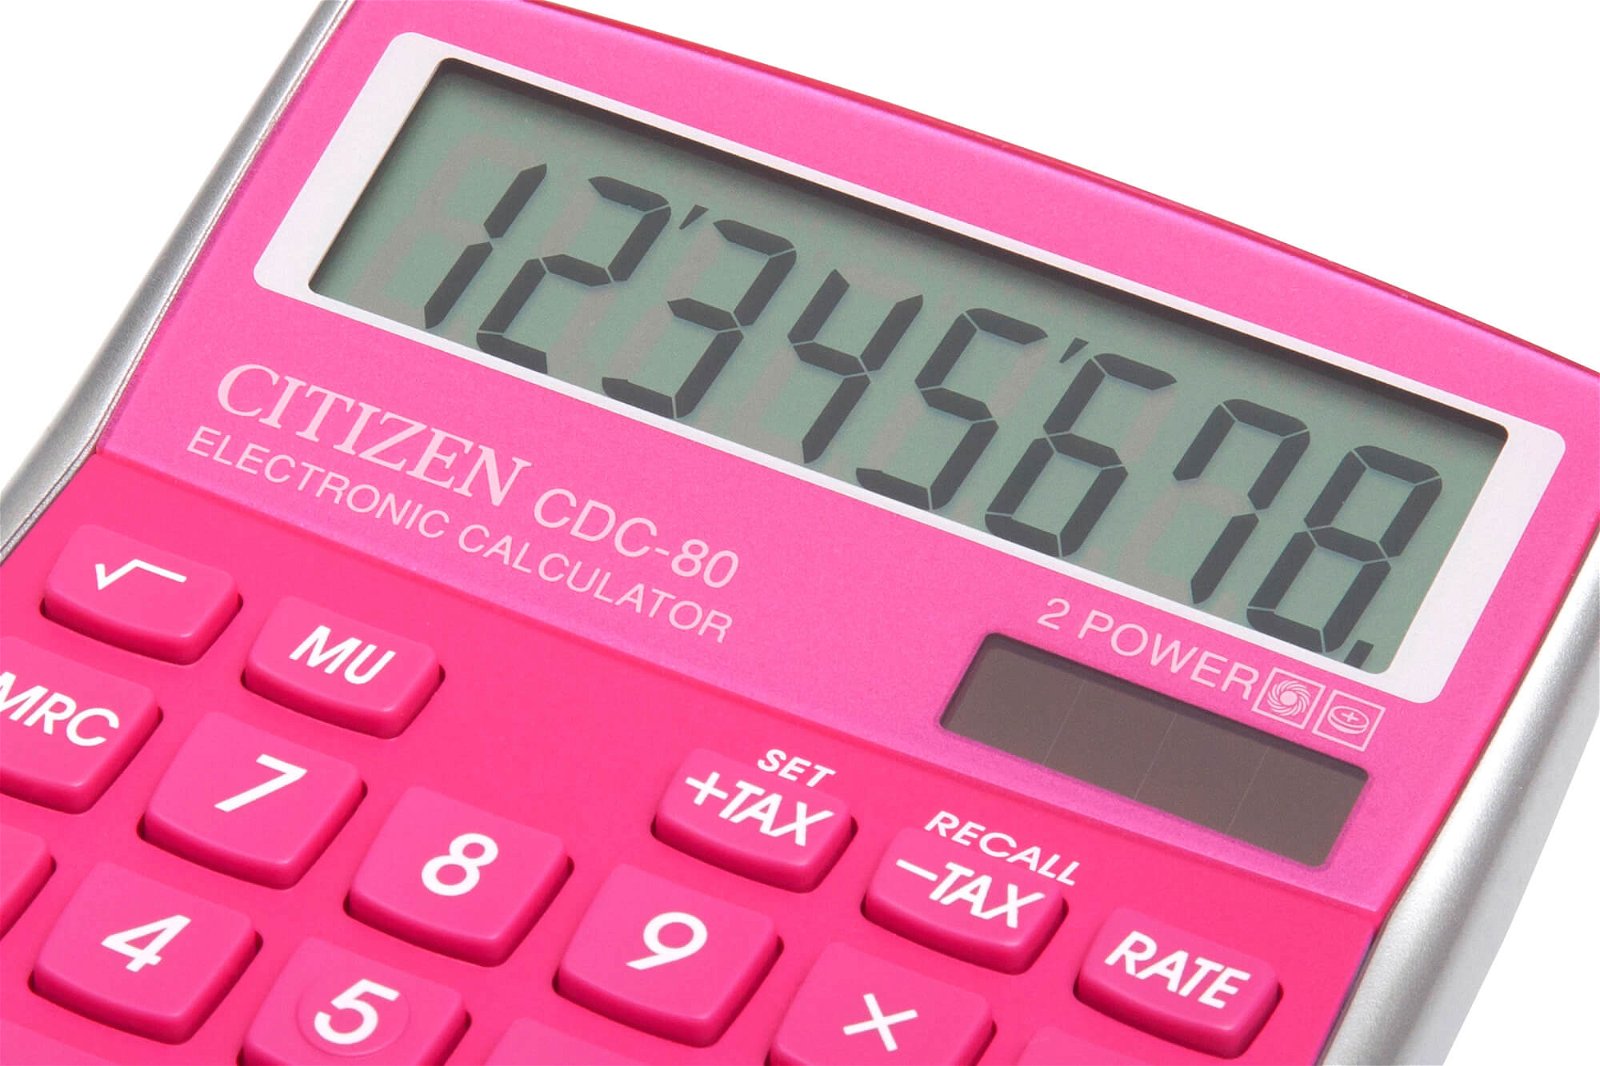 Tischrechner CDC 80PKWB, pink